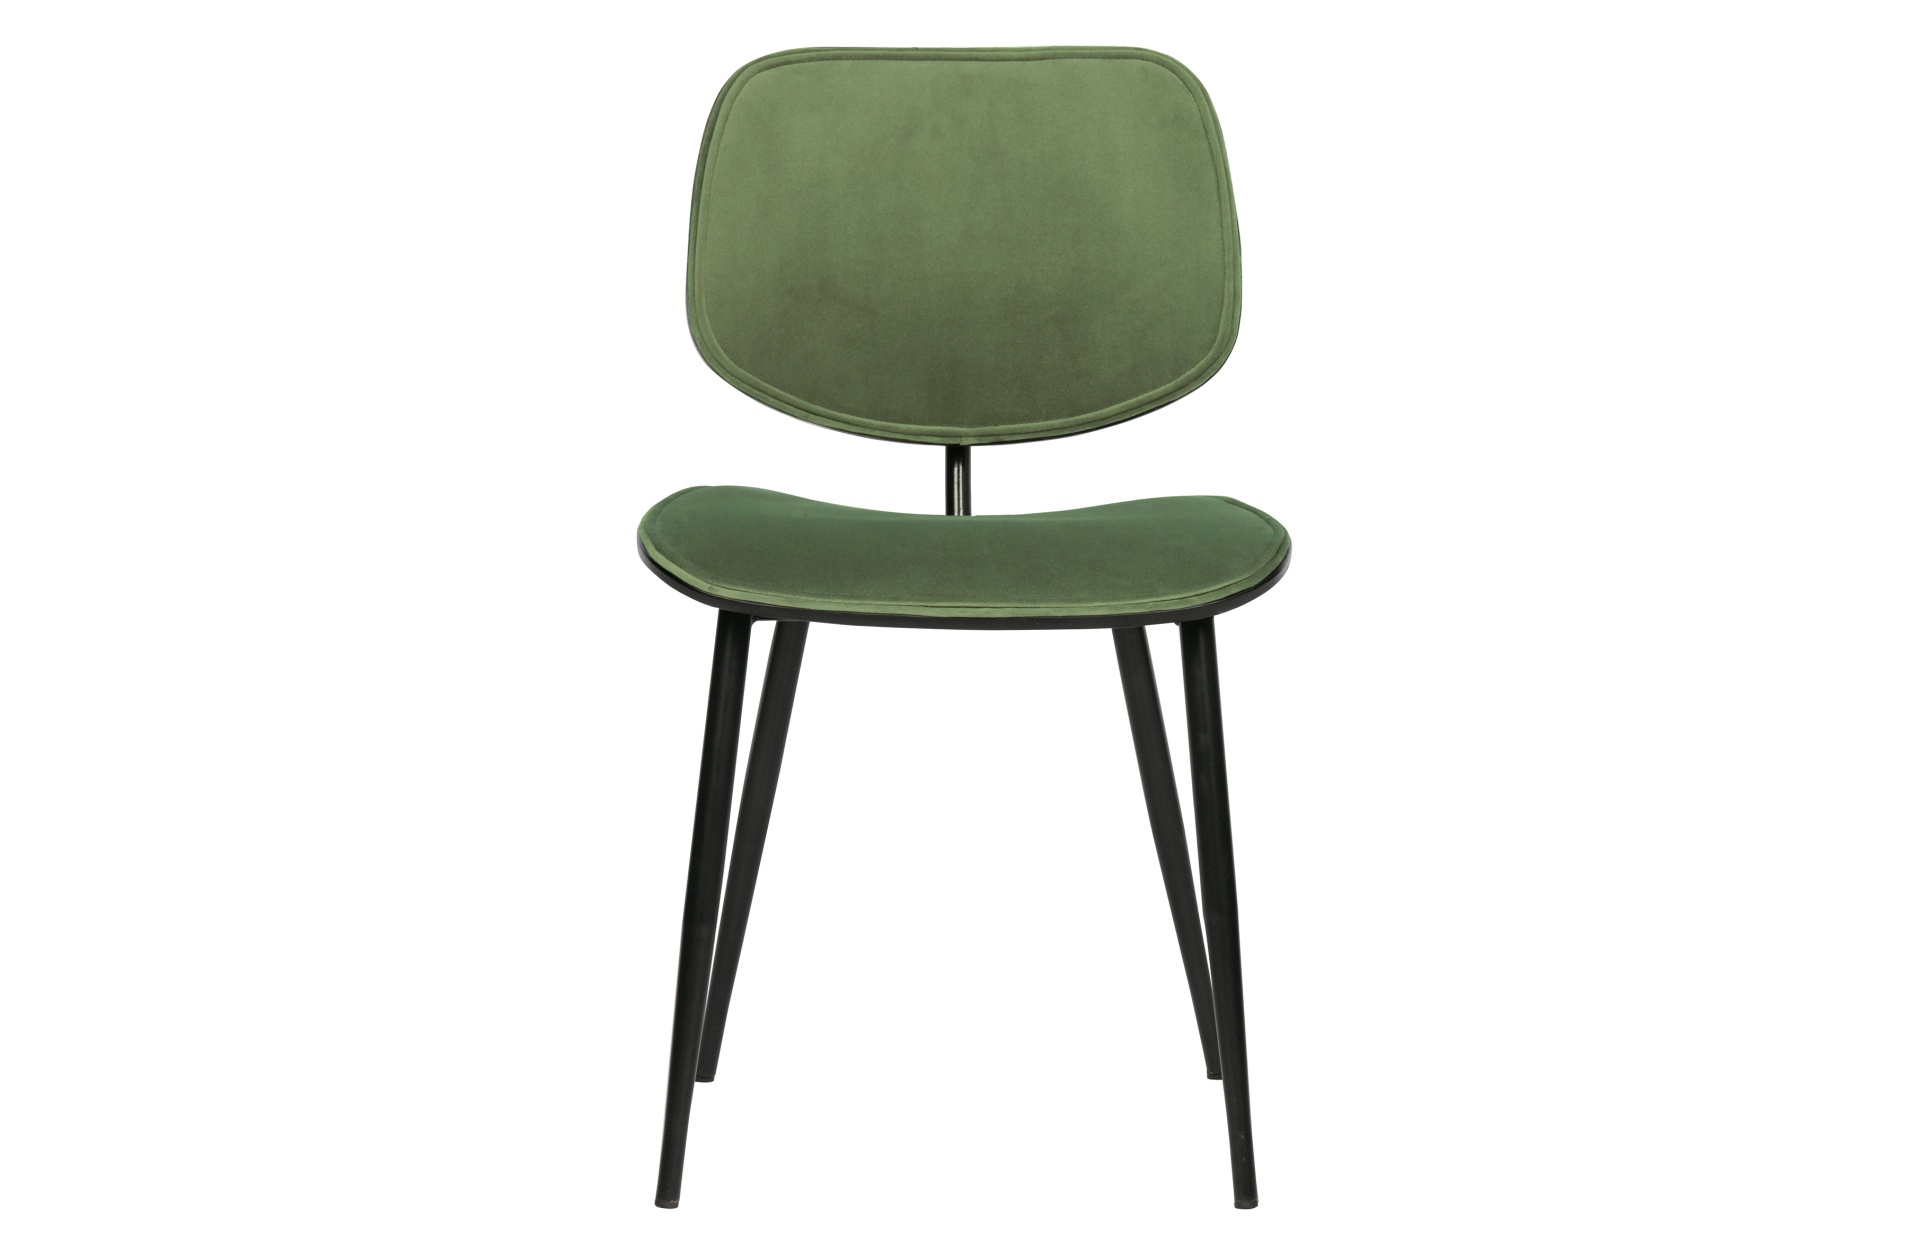 Der Esszimmerstuhl Jackie überzeugt mit seinem modernen Design. Gefertigt wurde er aus Samt, welches einen grünen Farbton besitzt. Das Gestell ist aus Metall und hat eine schwarze Farbe. Der Stuhl verfügt über eine Sitzhöhe von 47 cm.